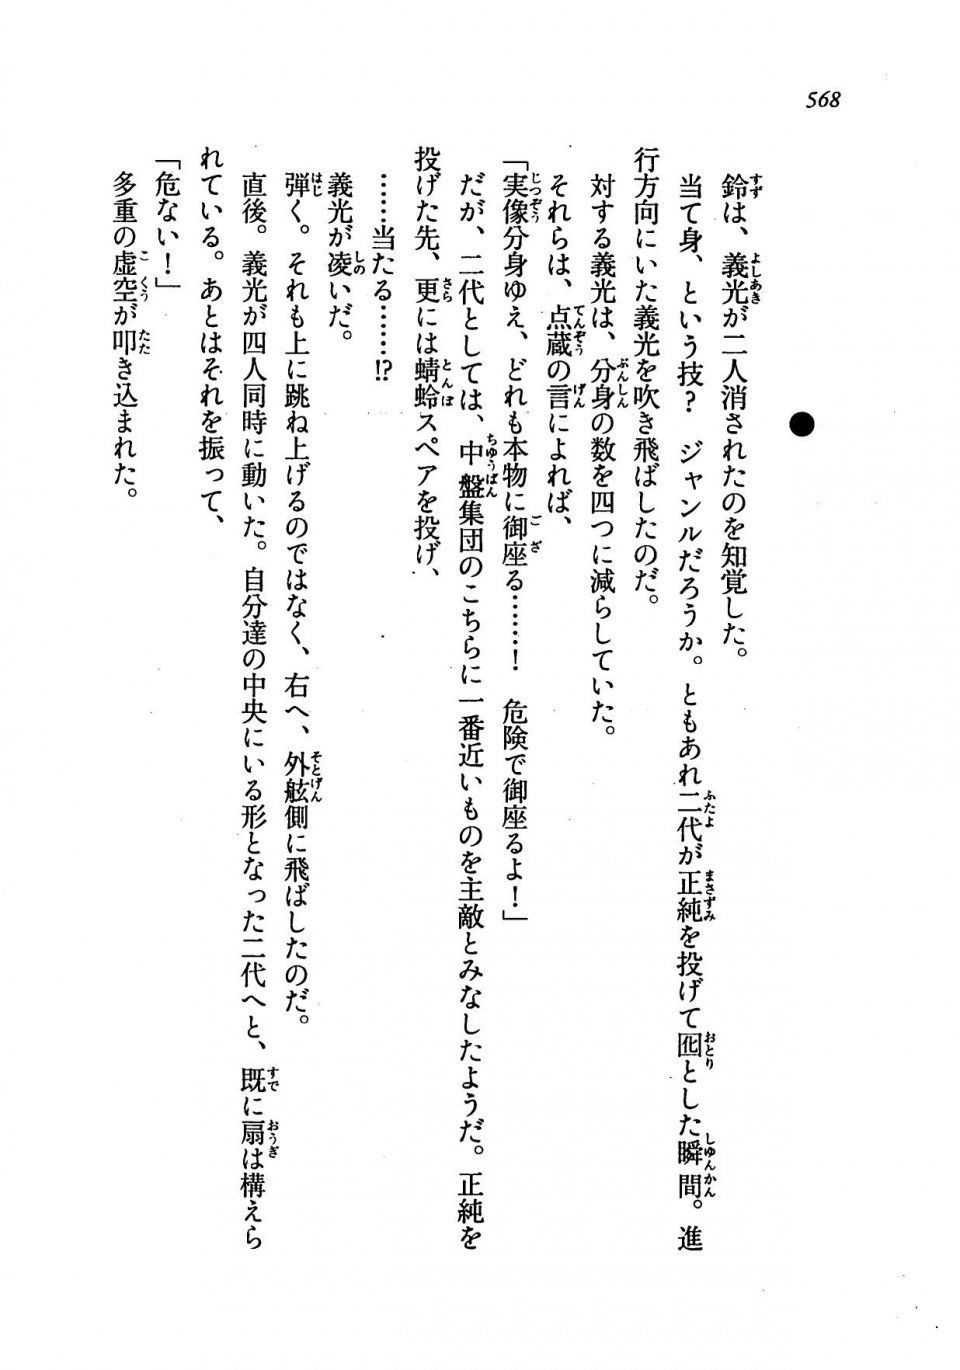 Kyoukai Senjou no Horizon LN Vol 19(8A) - Photo #568